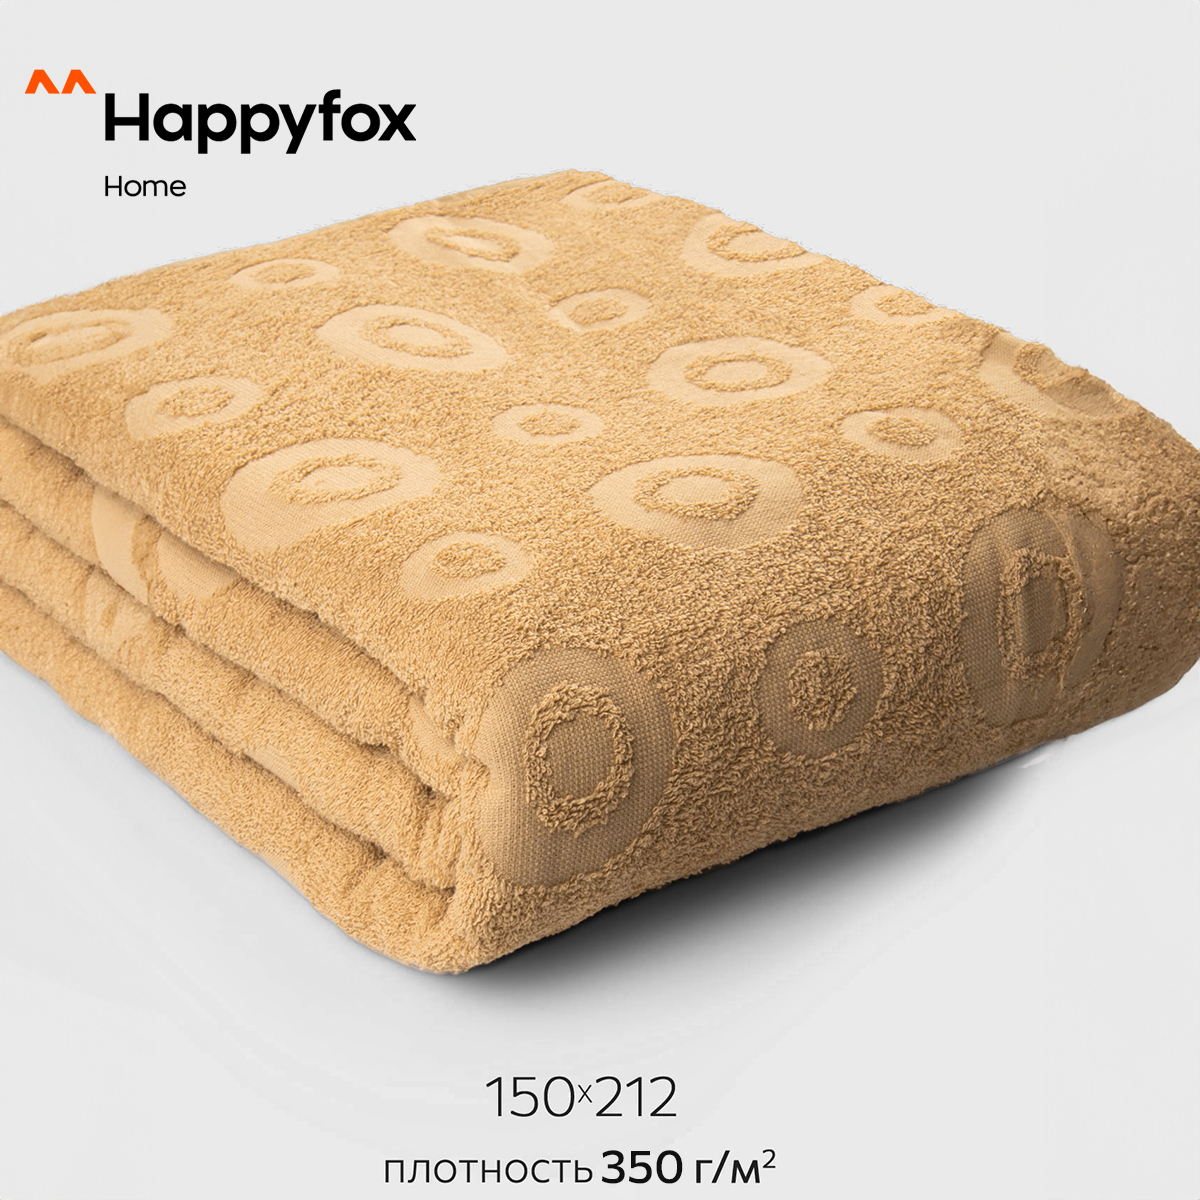 Простыня Happy Fox Home HF1502121015350 кофе с молоком 150X212